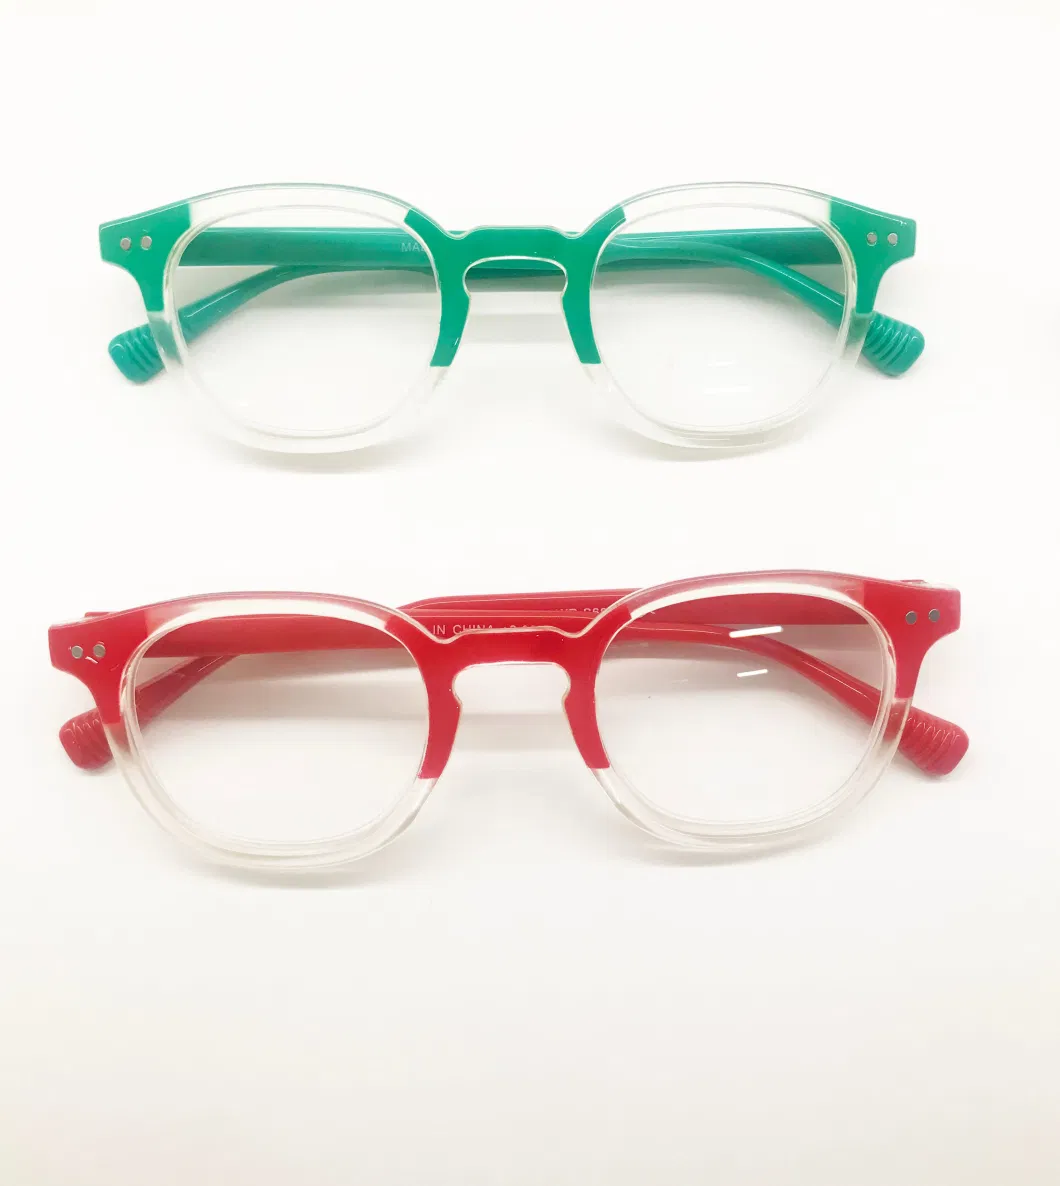 Ouyuan Optical Glasses 2023 New Design Light Cat Eye Custom Reading Glasses